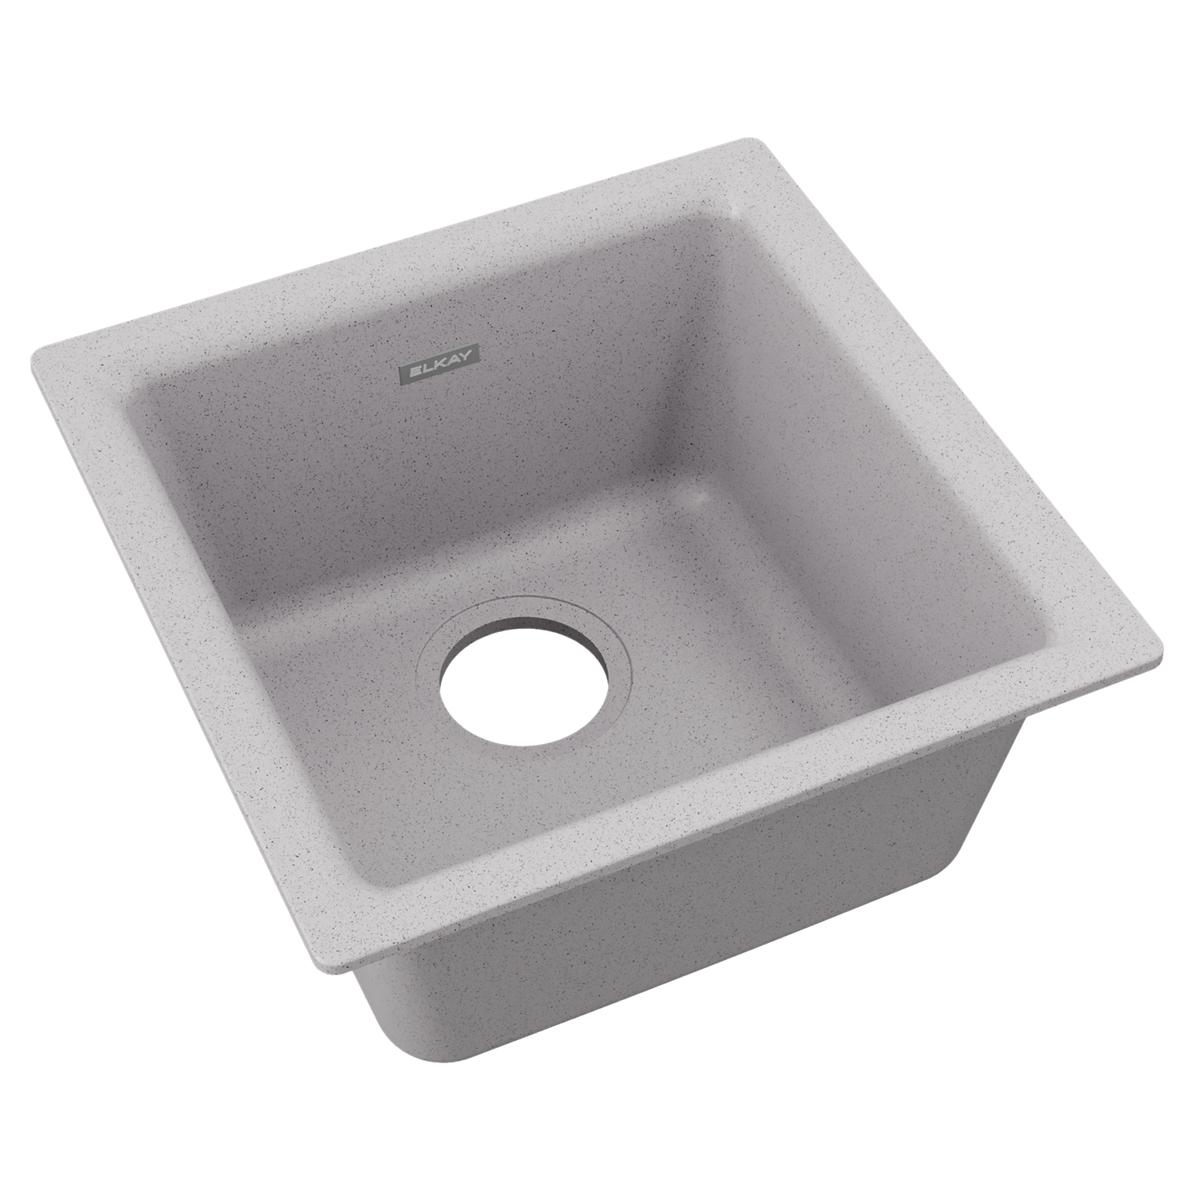 greystone single bowl dual mount bar sink